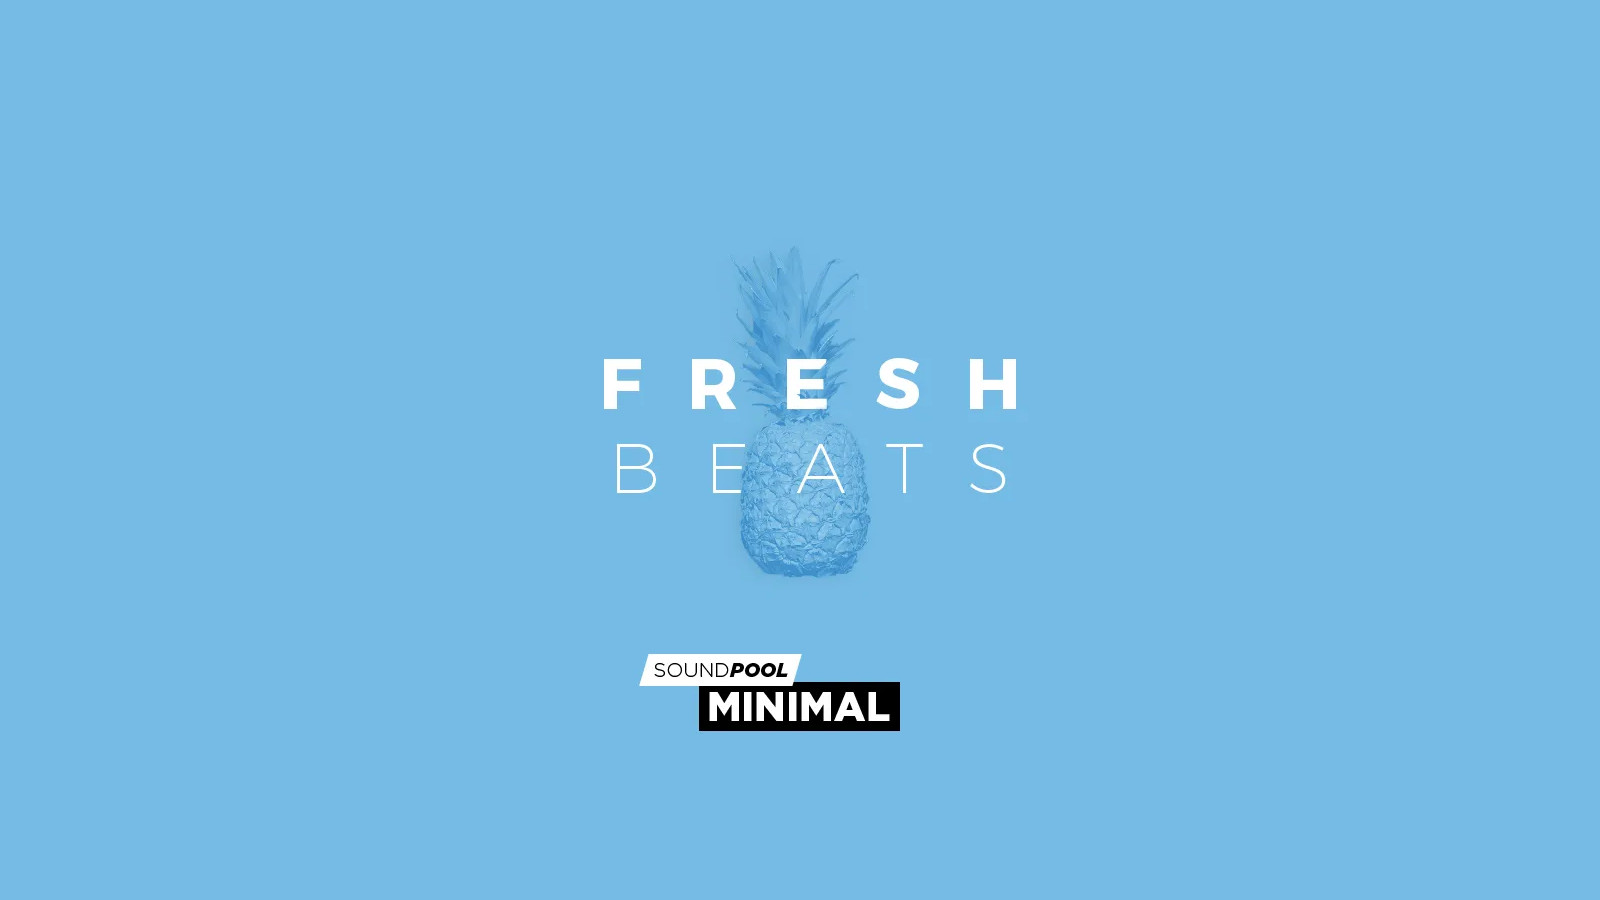 [$ 5.65] MAGIX Soundpool Fresh Beats ProducerPlanet CD Key